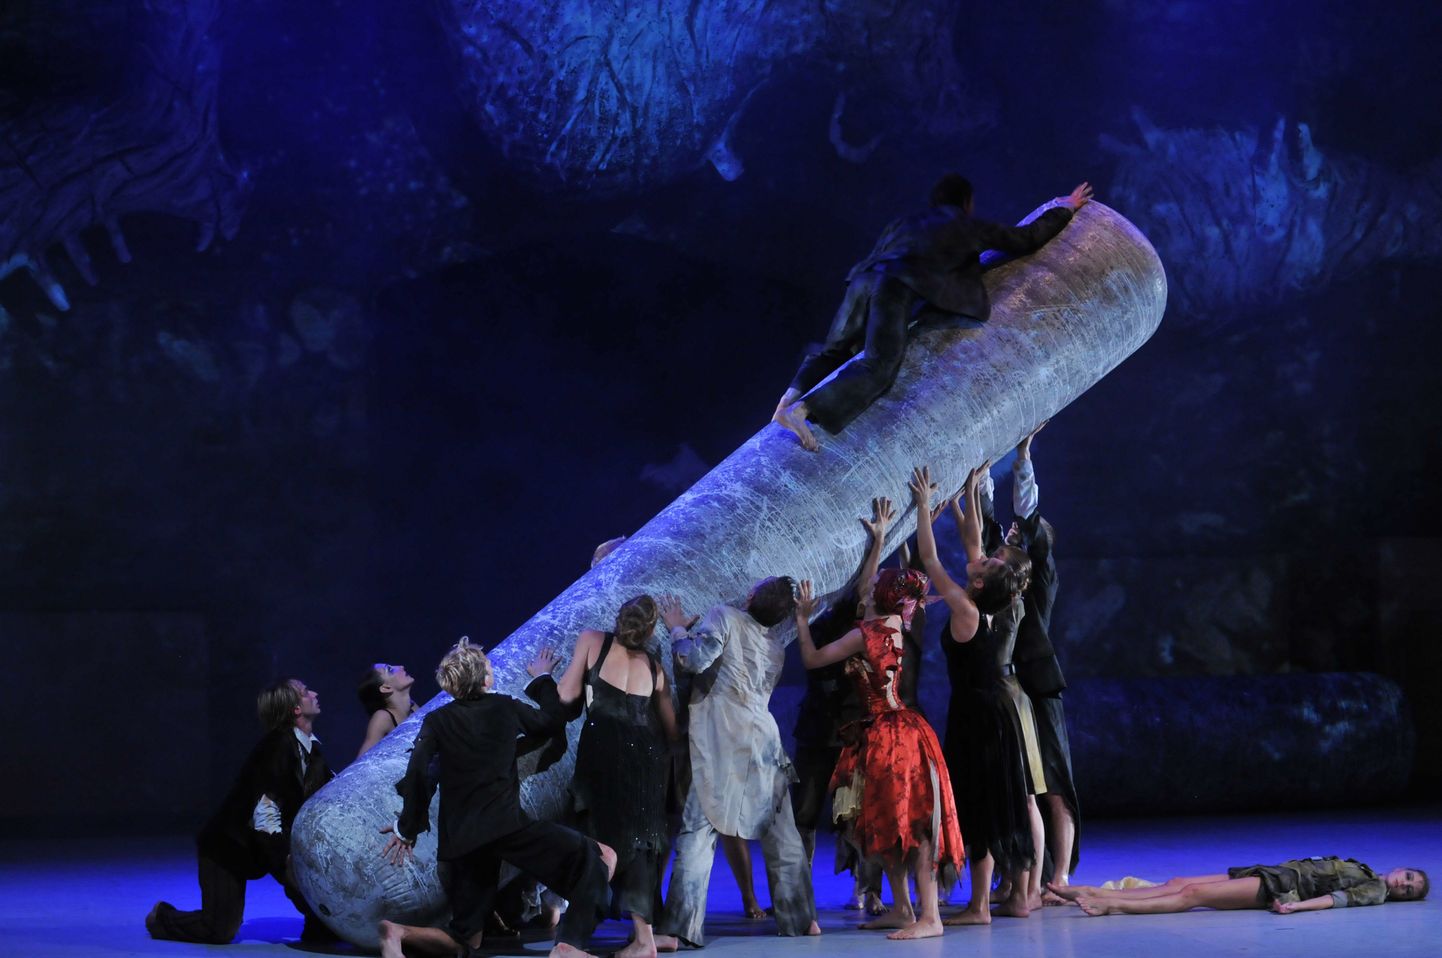 Финальная сцена из балета «Андеграунд»: к измученным, загнанным в подземелье людям в конце концов приходит спасение. Правда, ценой смерти и потерь.